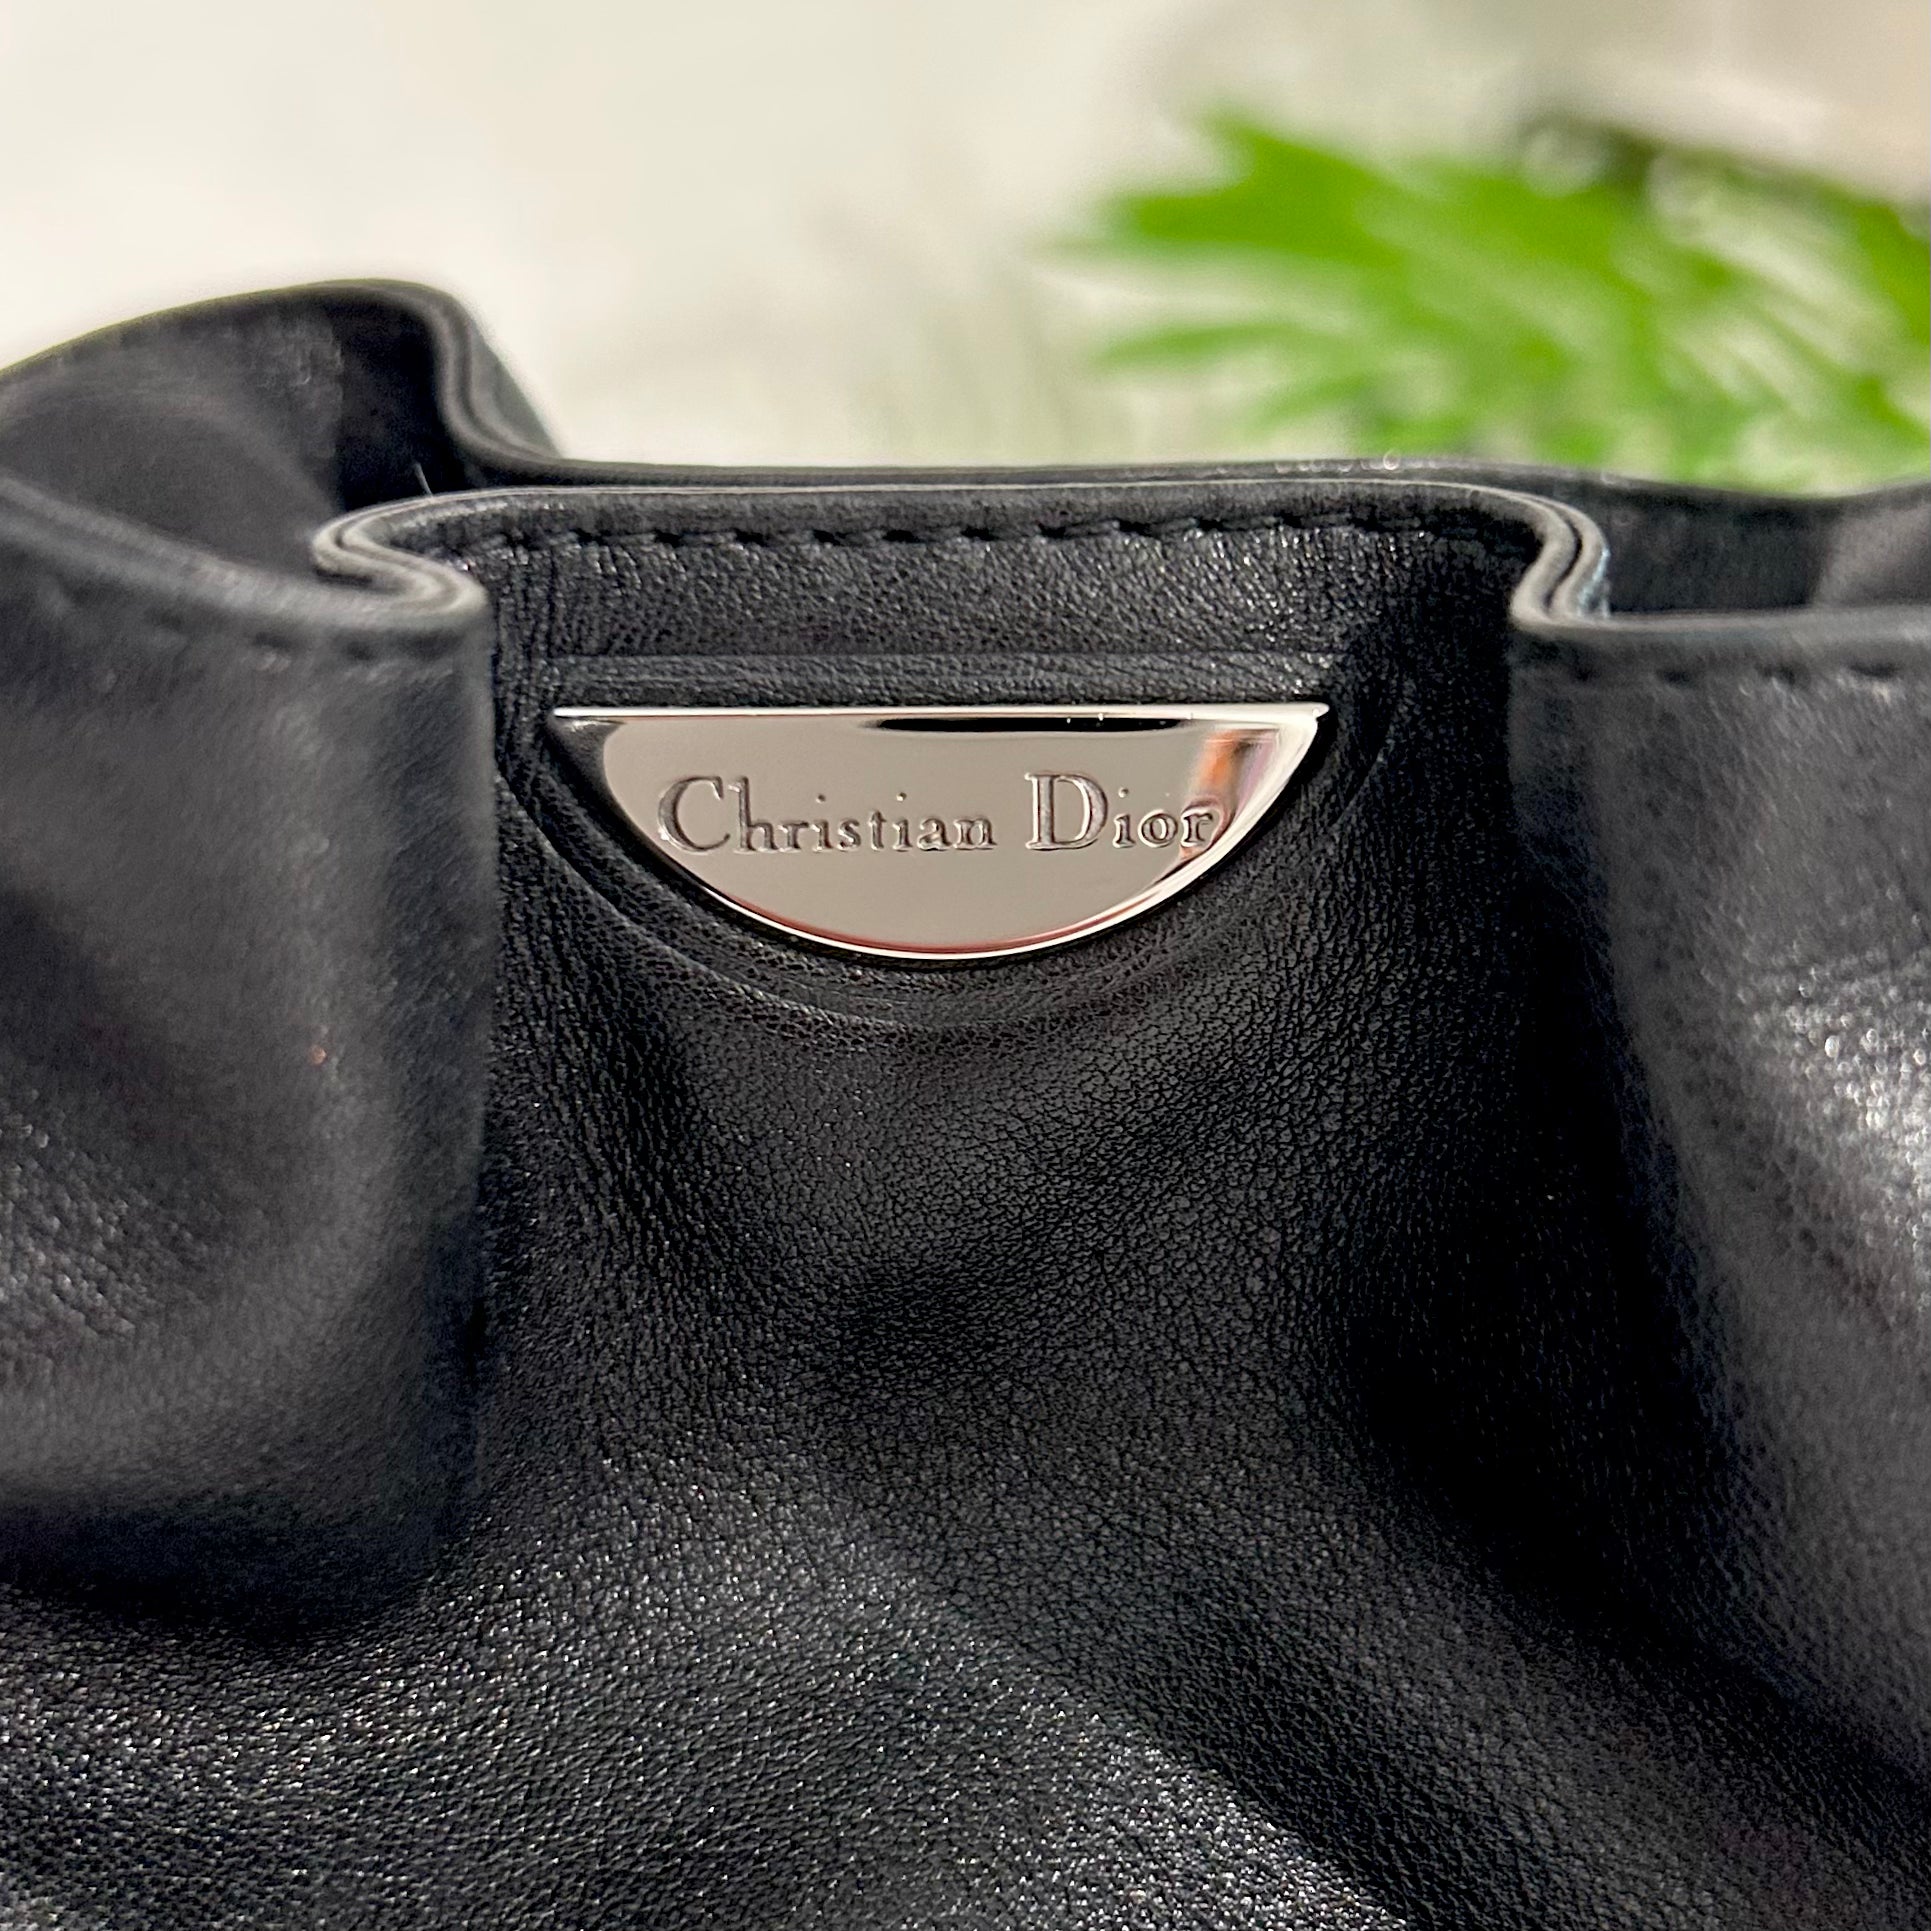 Dior Black Malice Bucket Bag